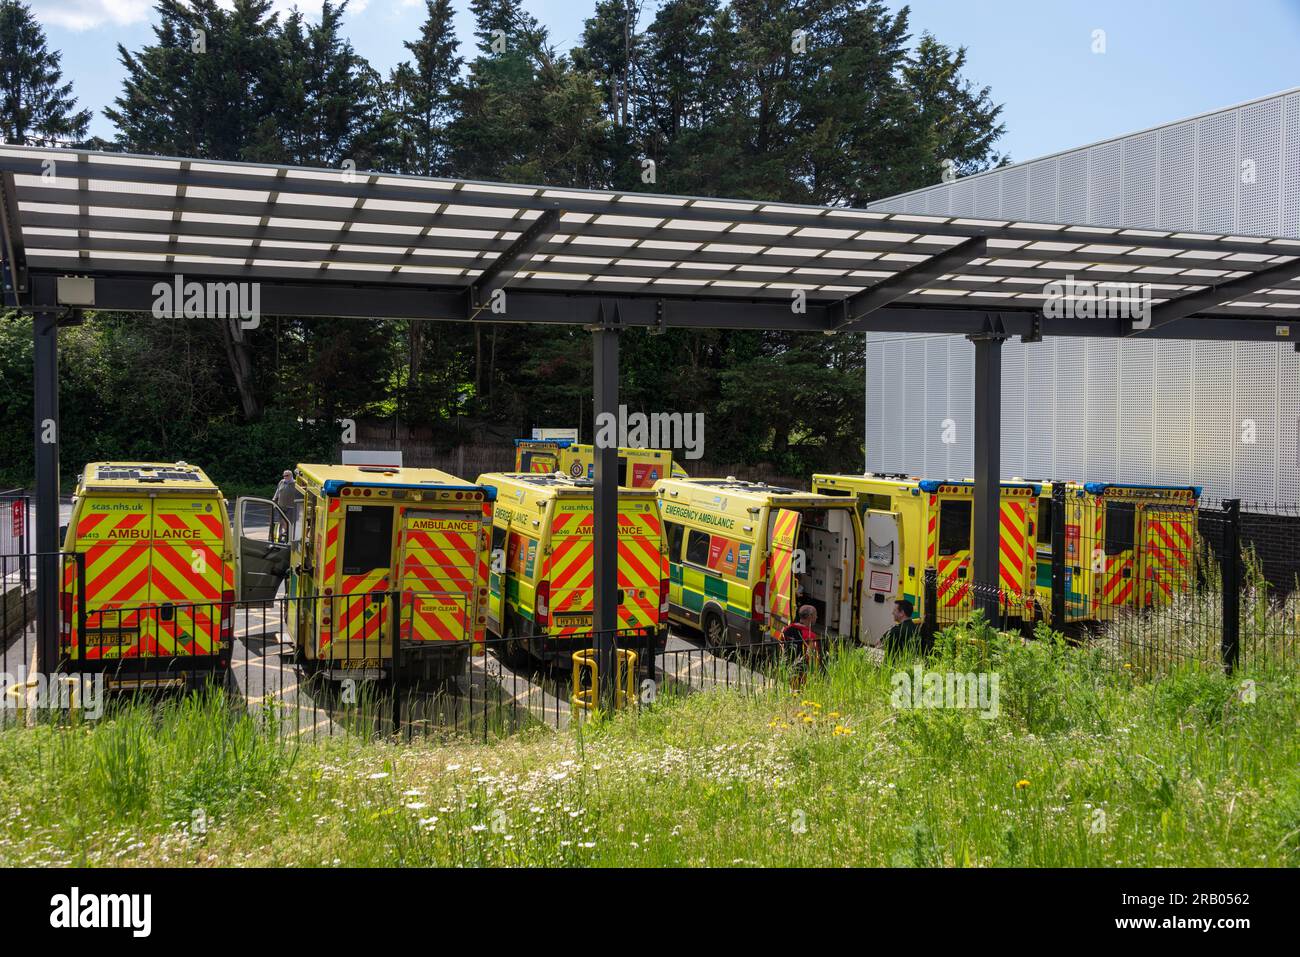 Ambulances at the John Radcliffe hospital, Oxford, UK Stock Photo